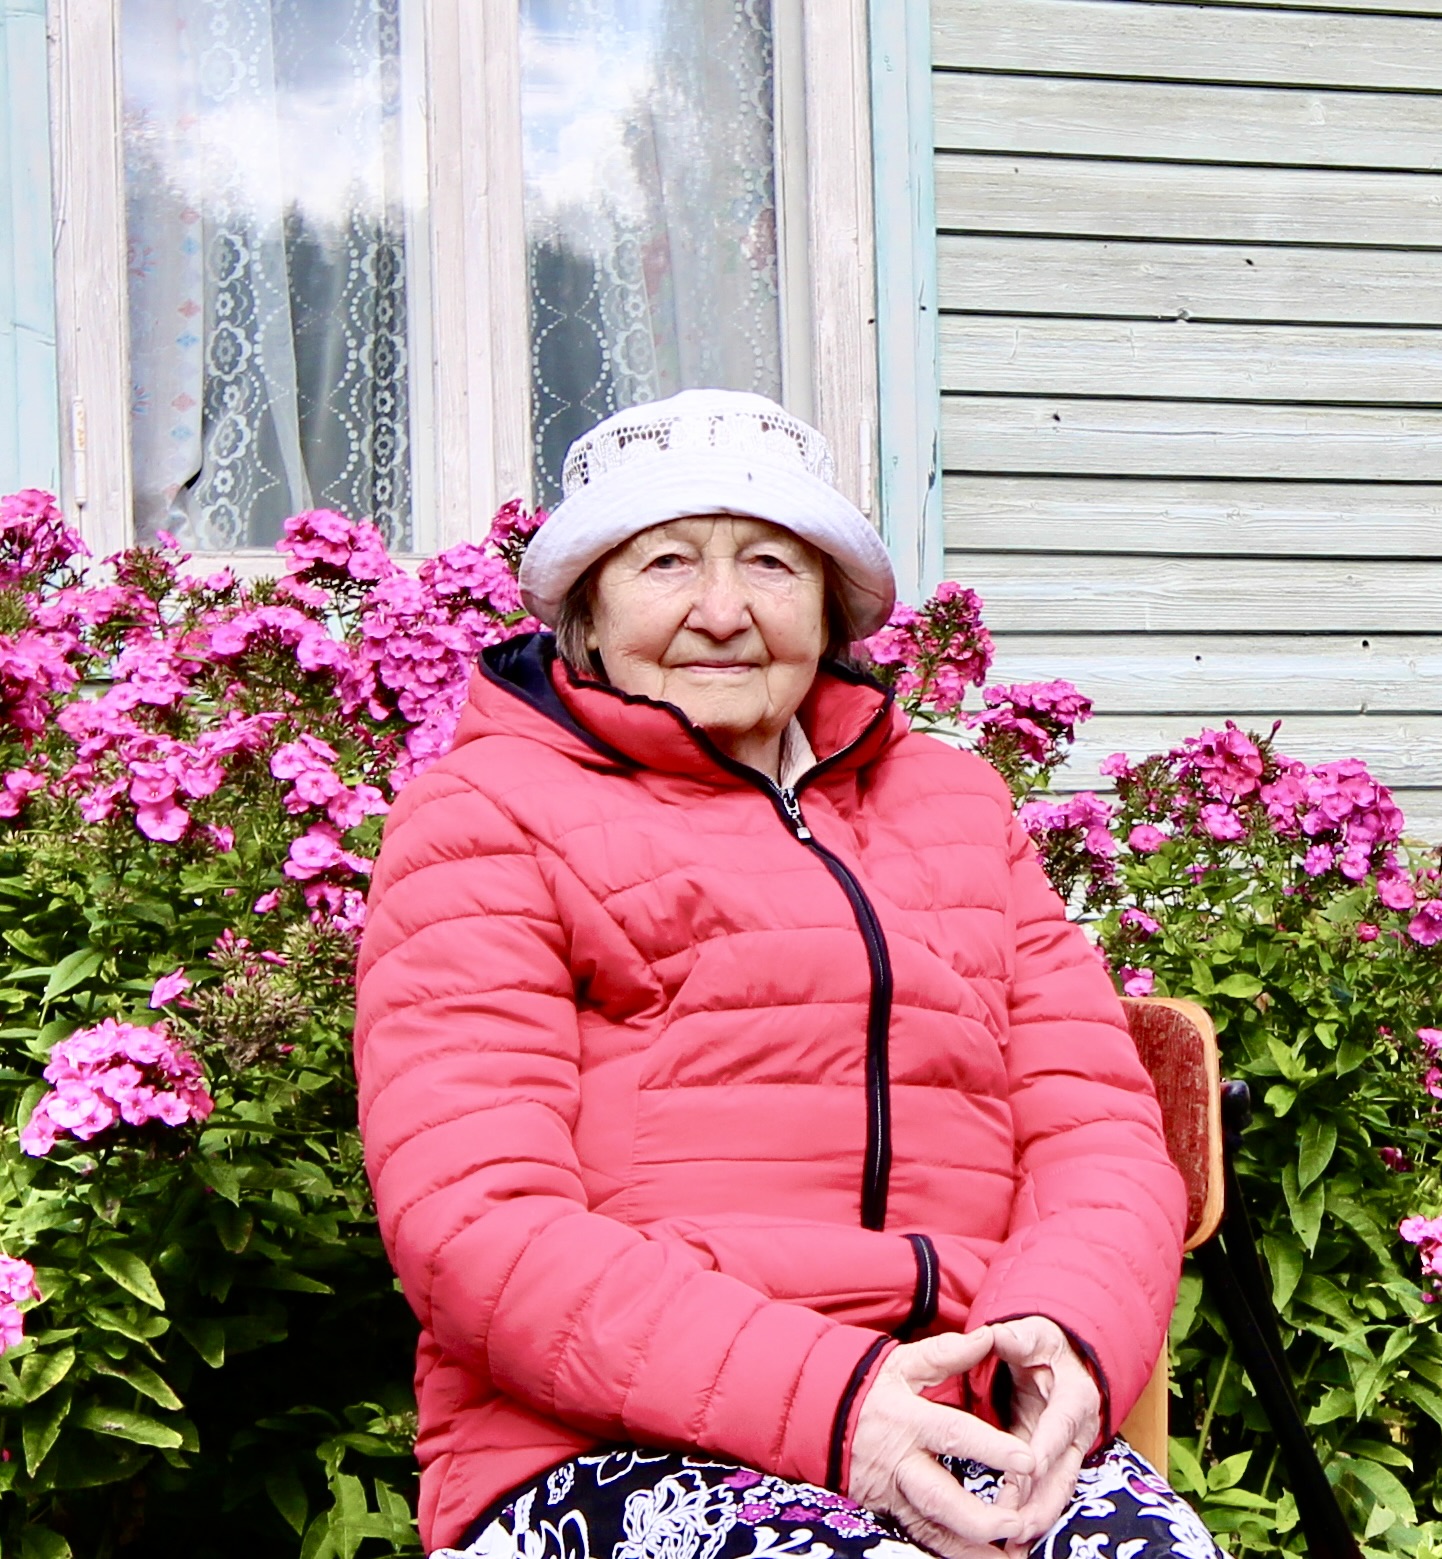 Täna Metstares oma 95. sünnipäeva ja emadepäeva lähedaste ringis tähistav ema, vanaema ja vanavanaema Leili Annom.